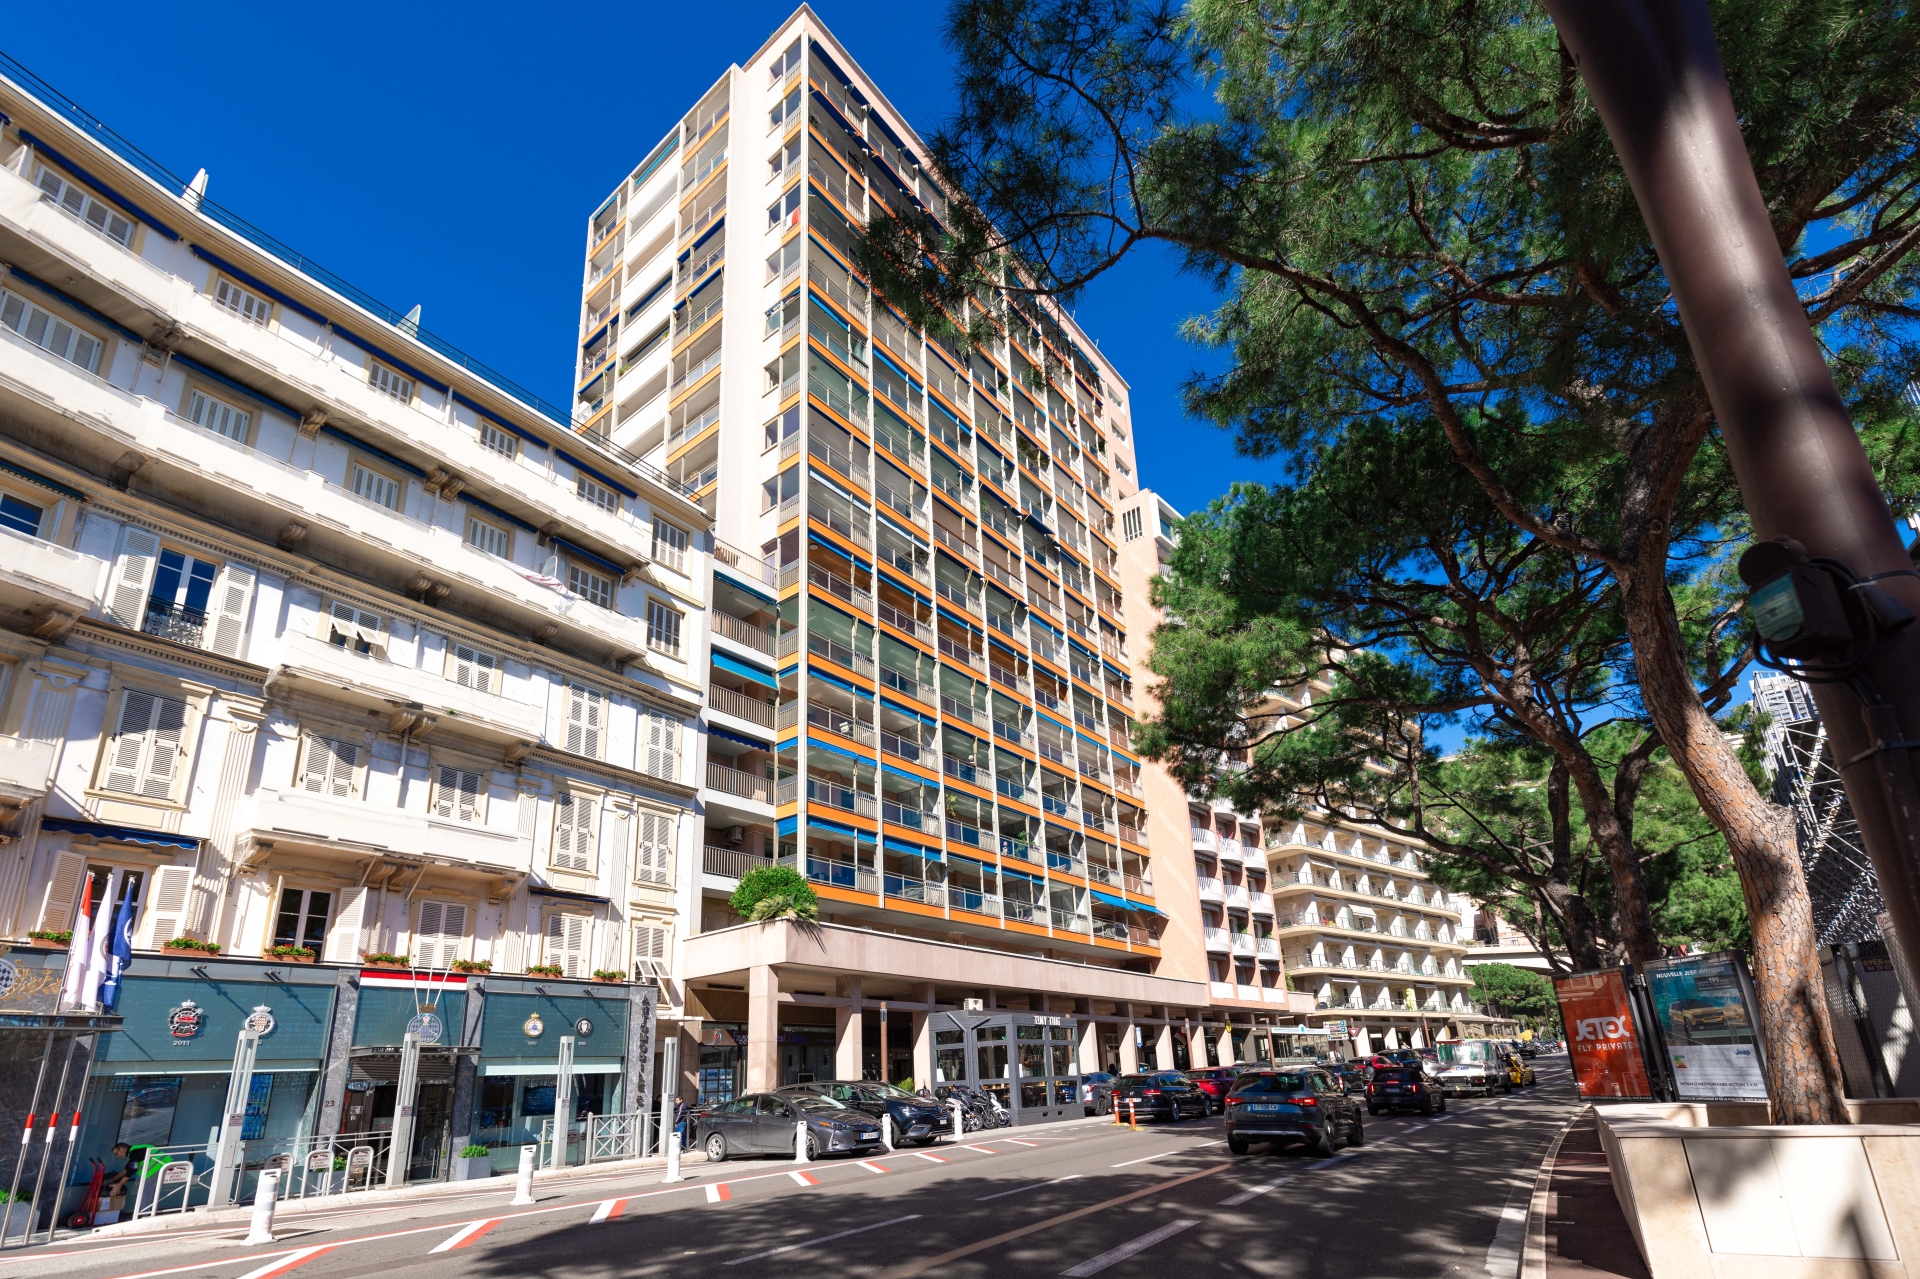 Dotta Appartement de 6+ pieces a vendre - CARAVELLES - Port - Monaco - img074a5889